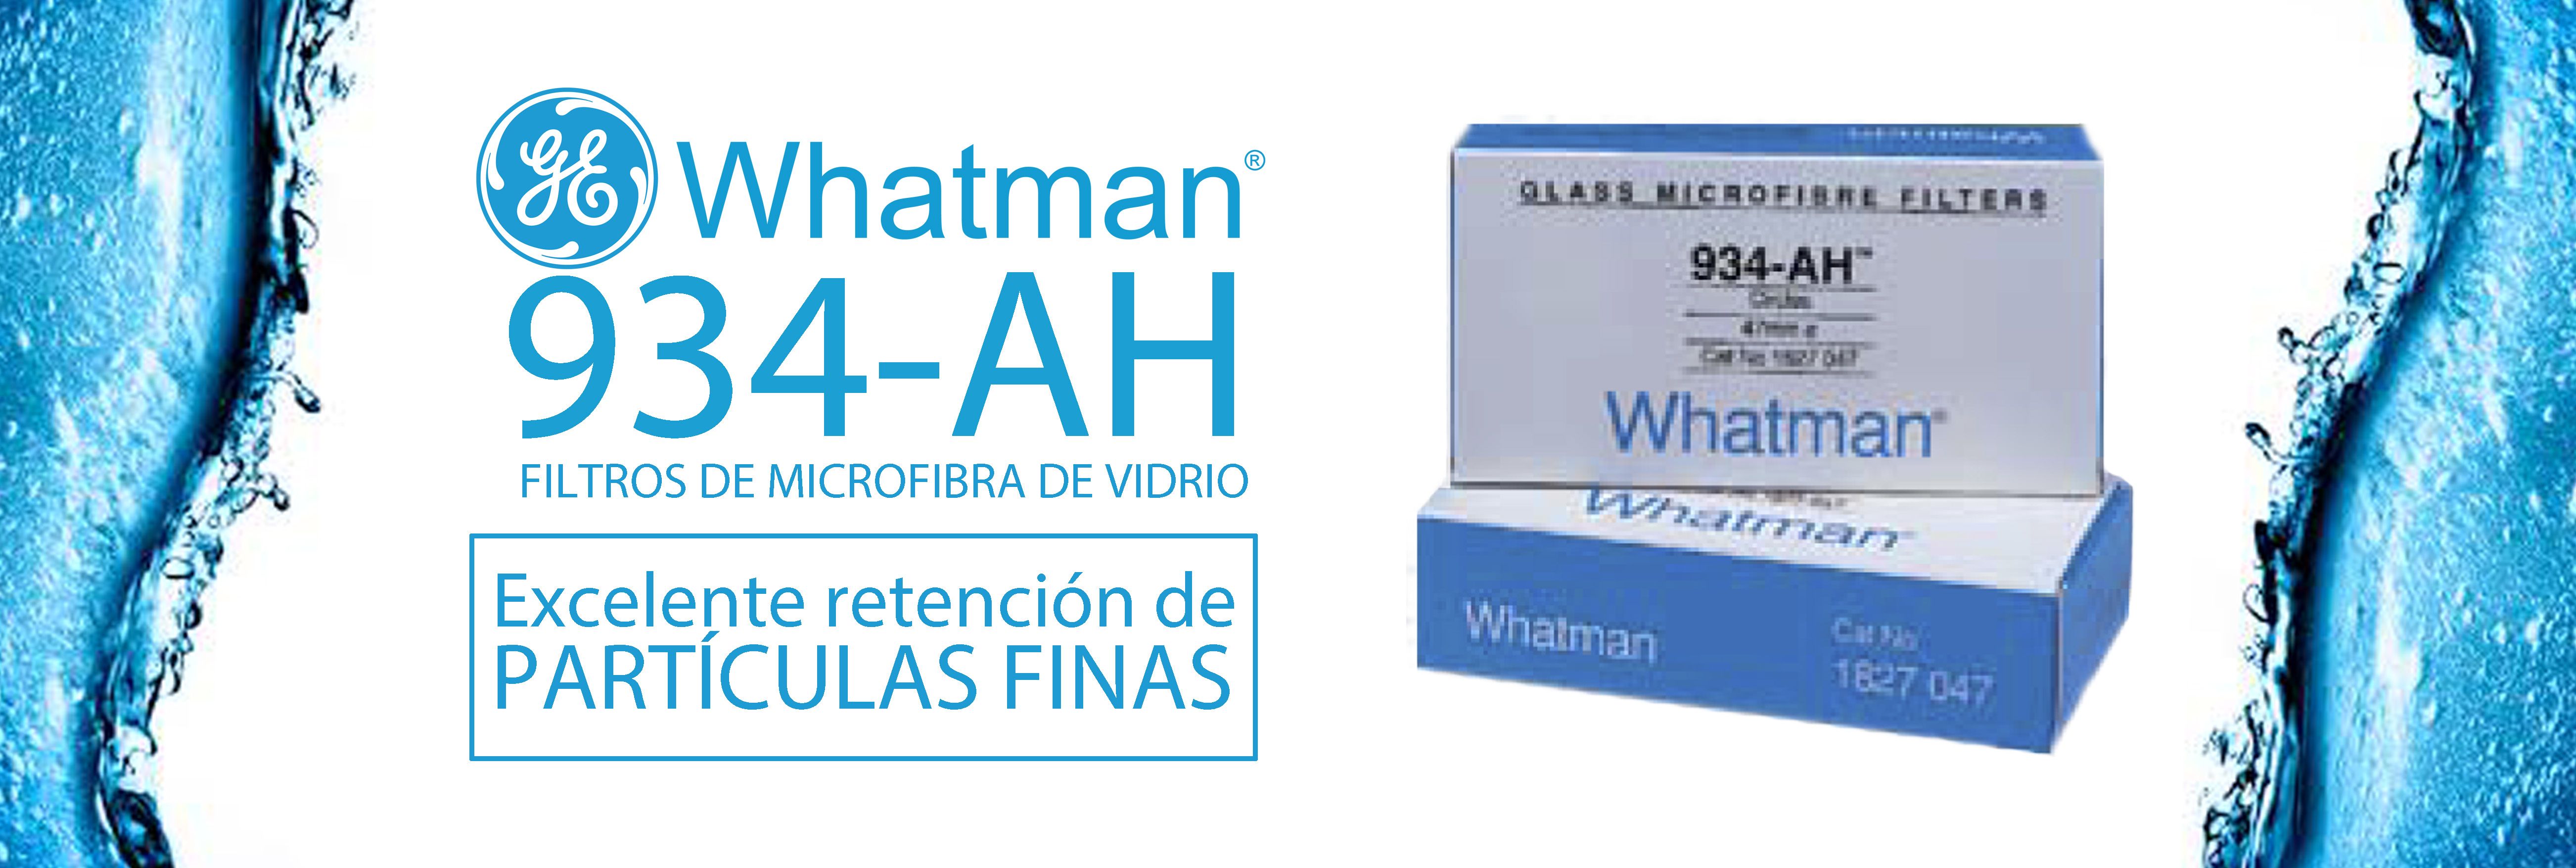 Whatman 934-AH: los mejores filtros para el análisis de sólidos en suspensión